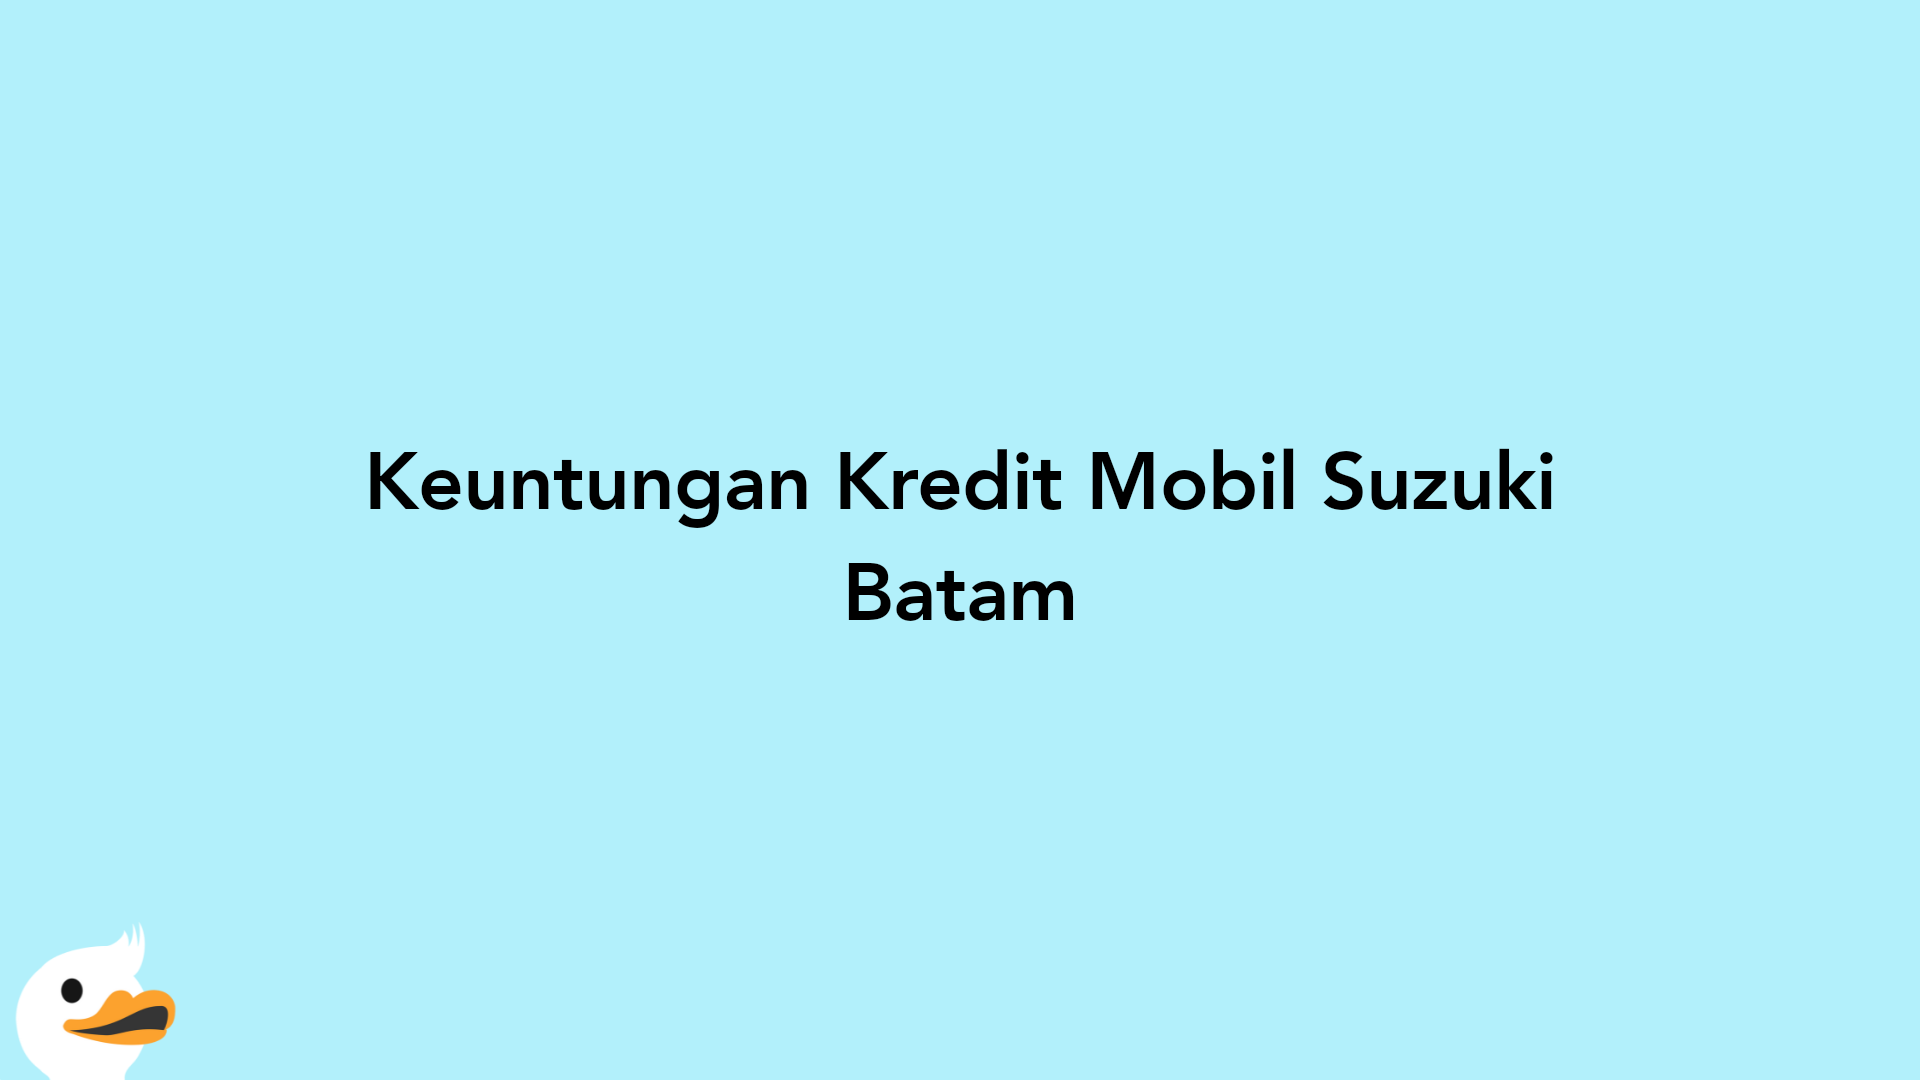 Keuntungan Kredit Mobil Suzuki Batam